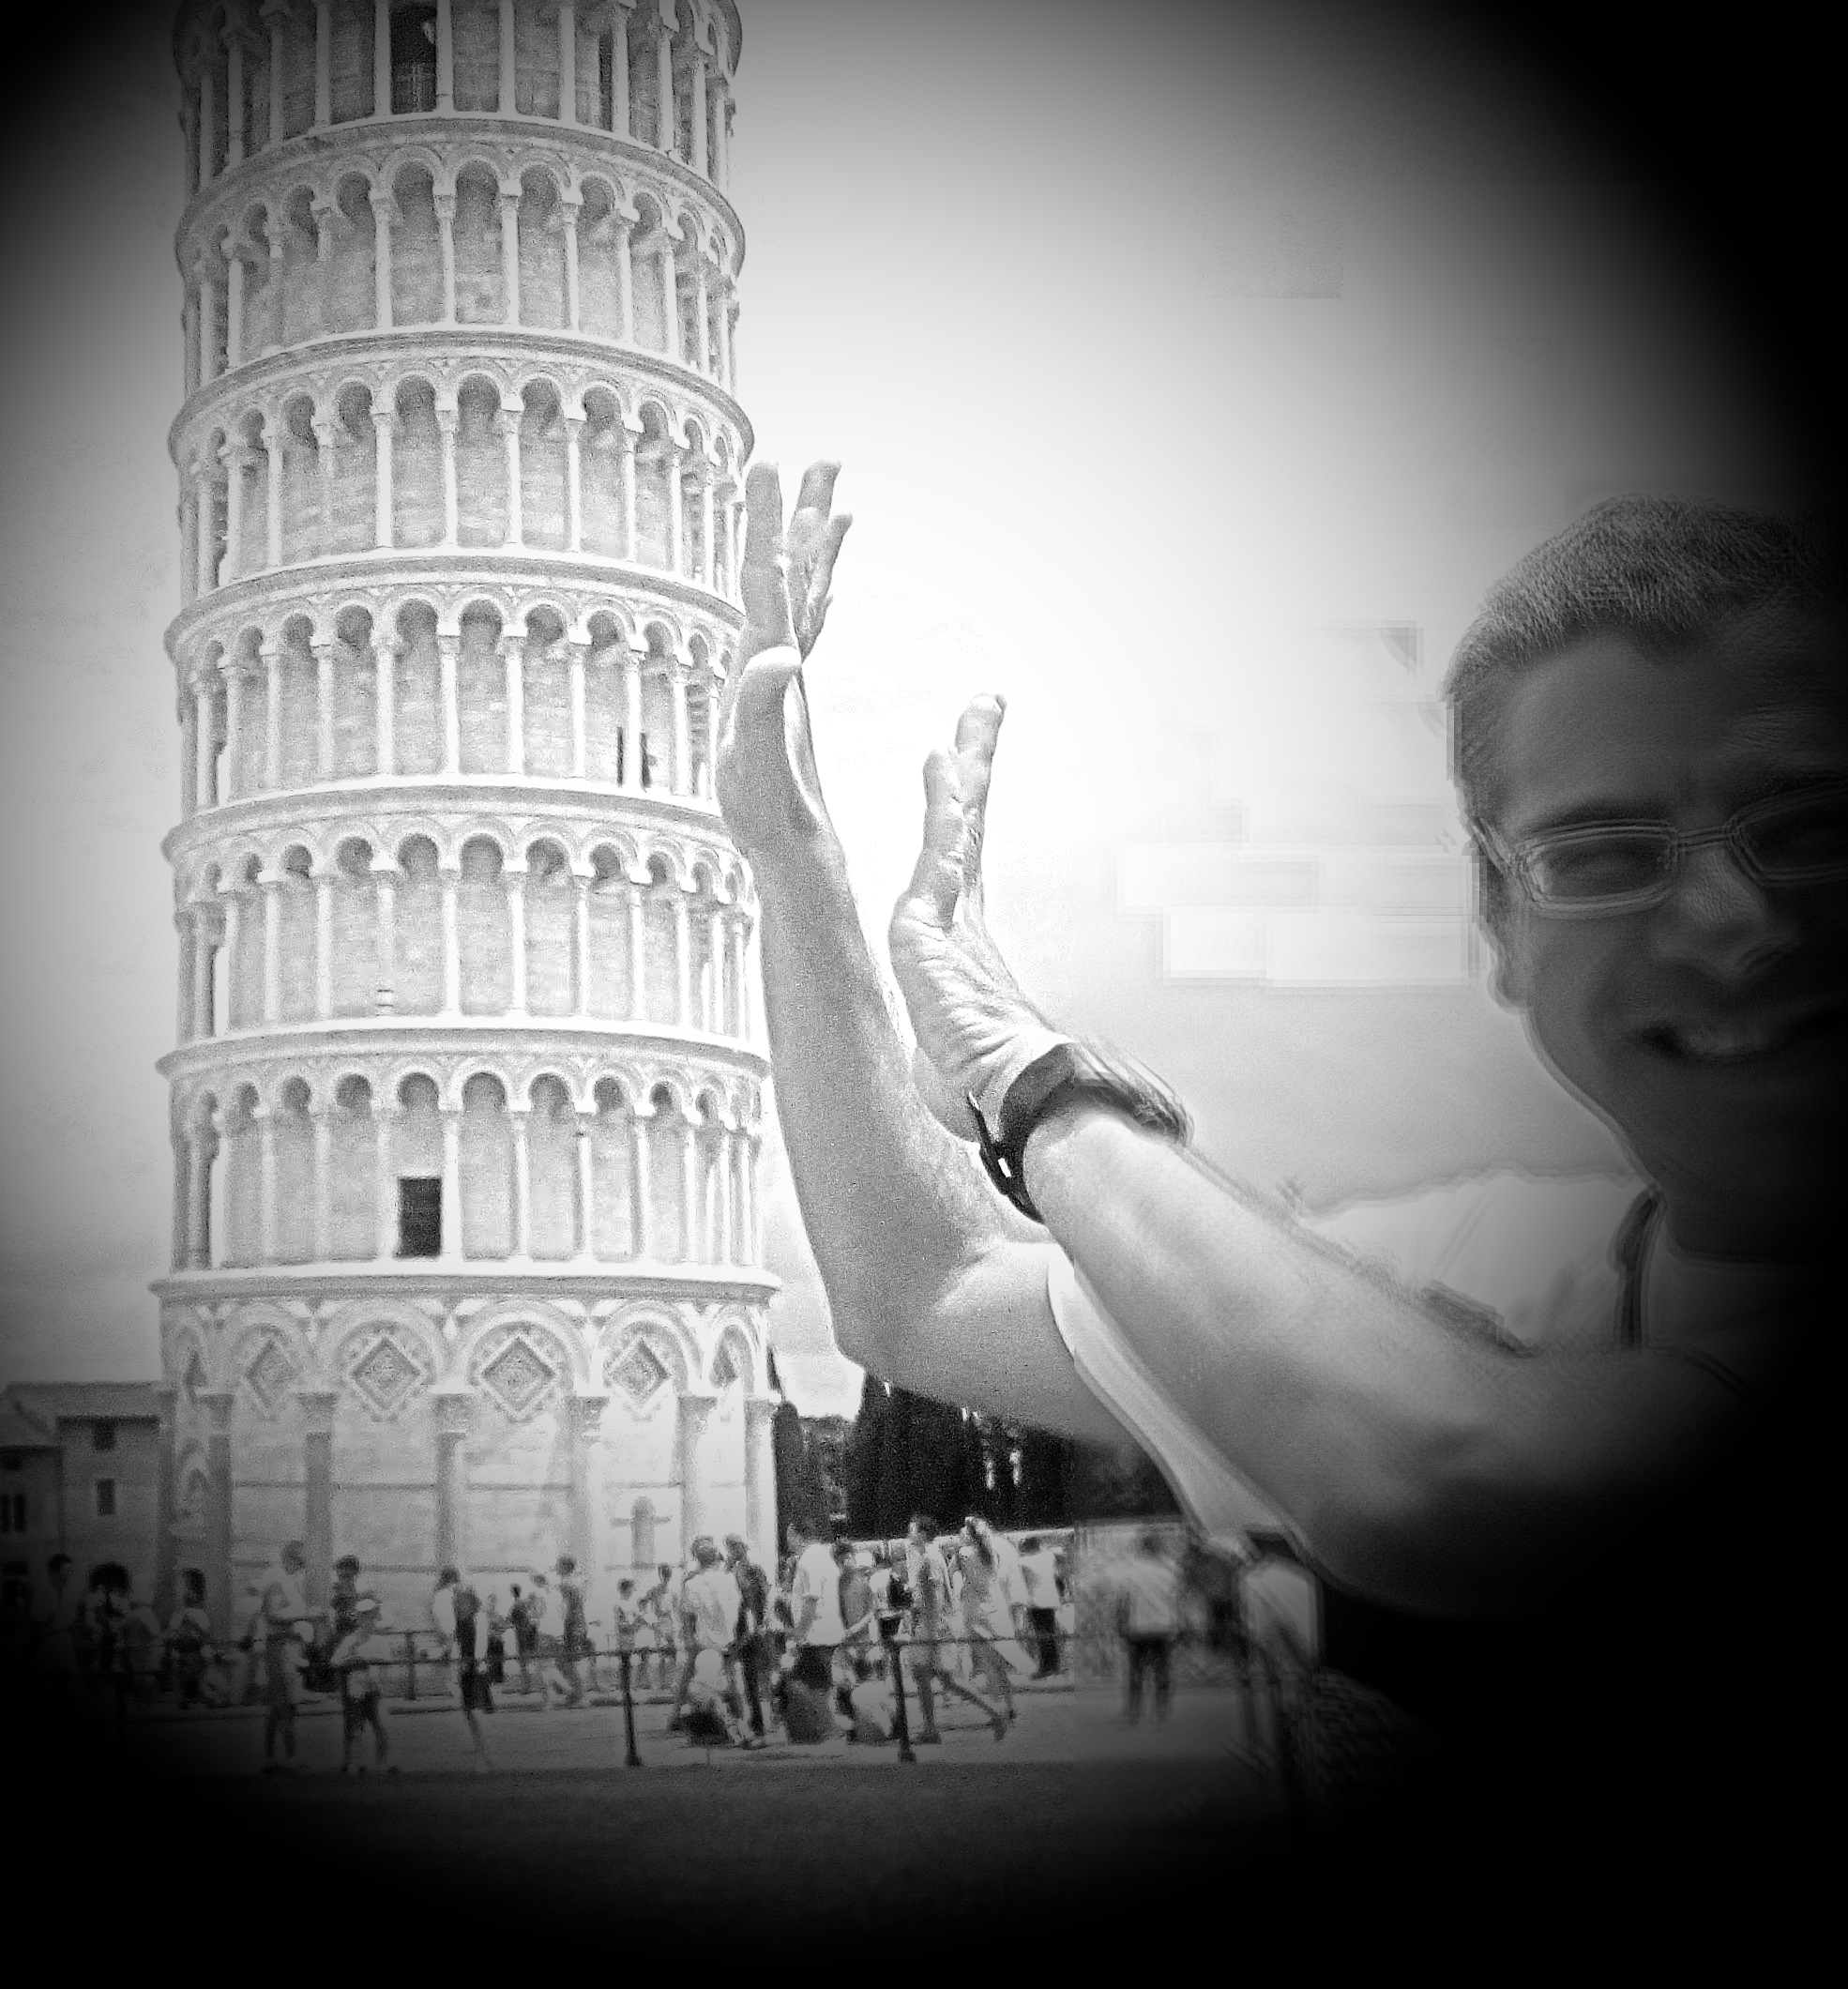 Se la torre di Pisa fosse dritta, a chi interesserebbe?